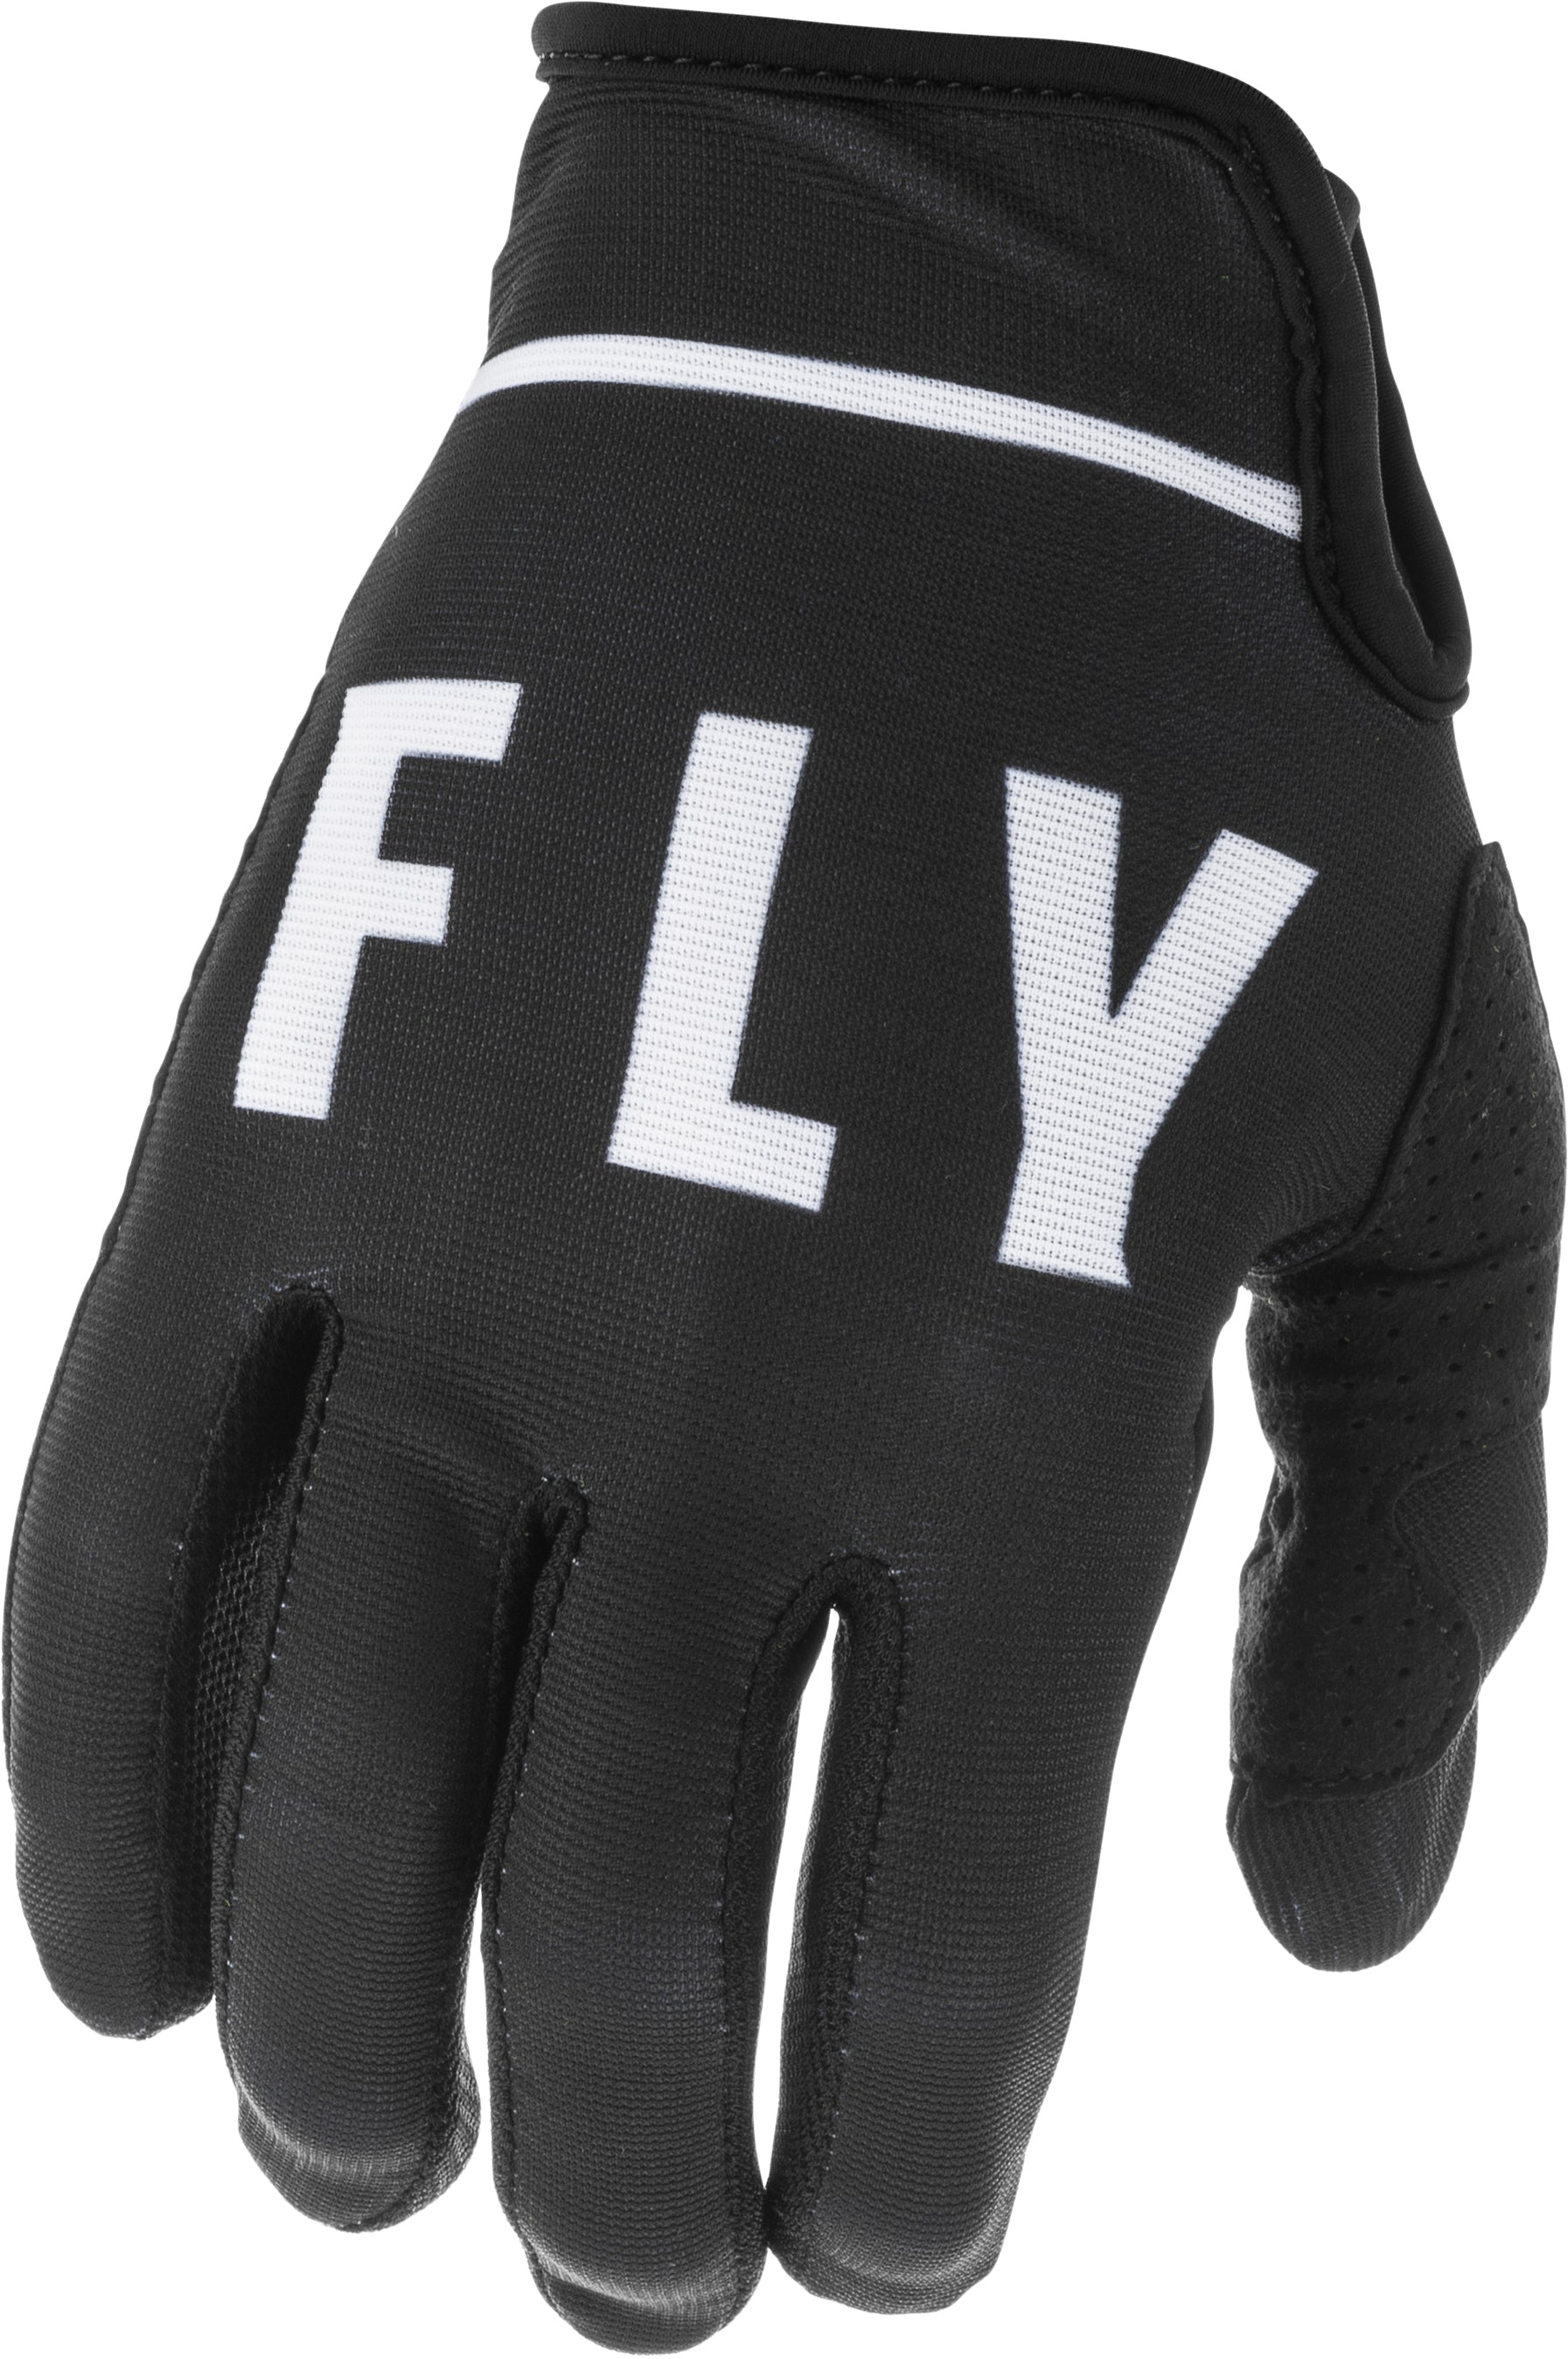 Lite Gloves Black/White Sz 10